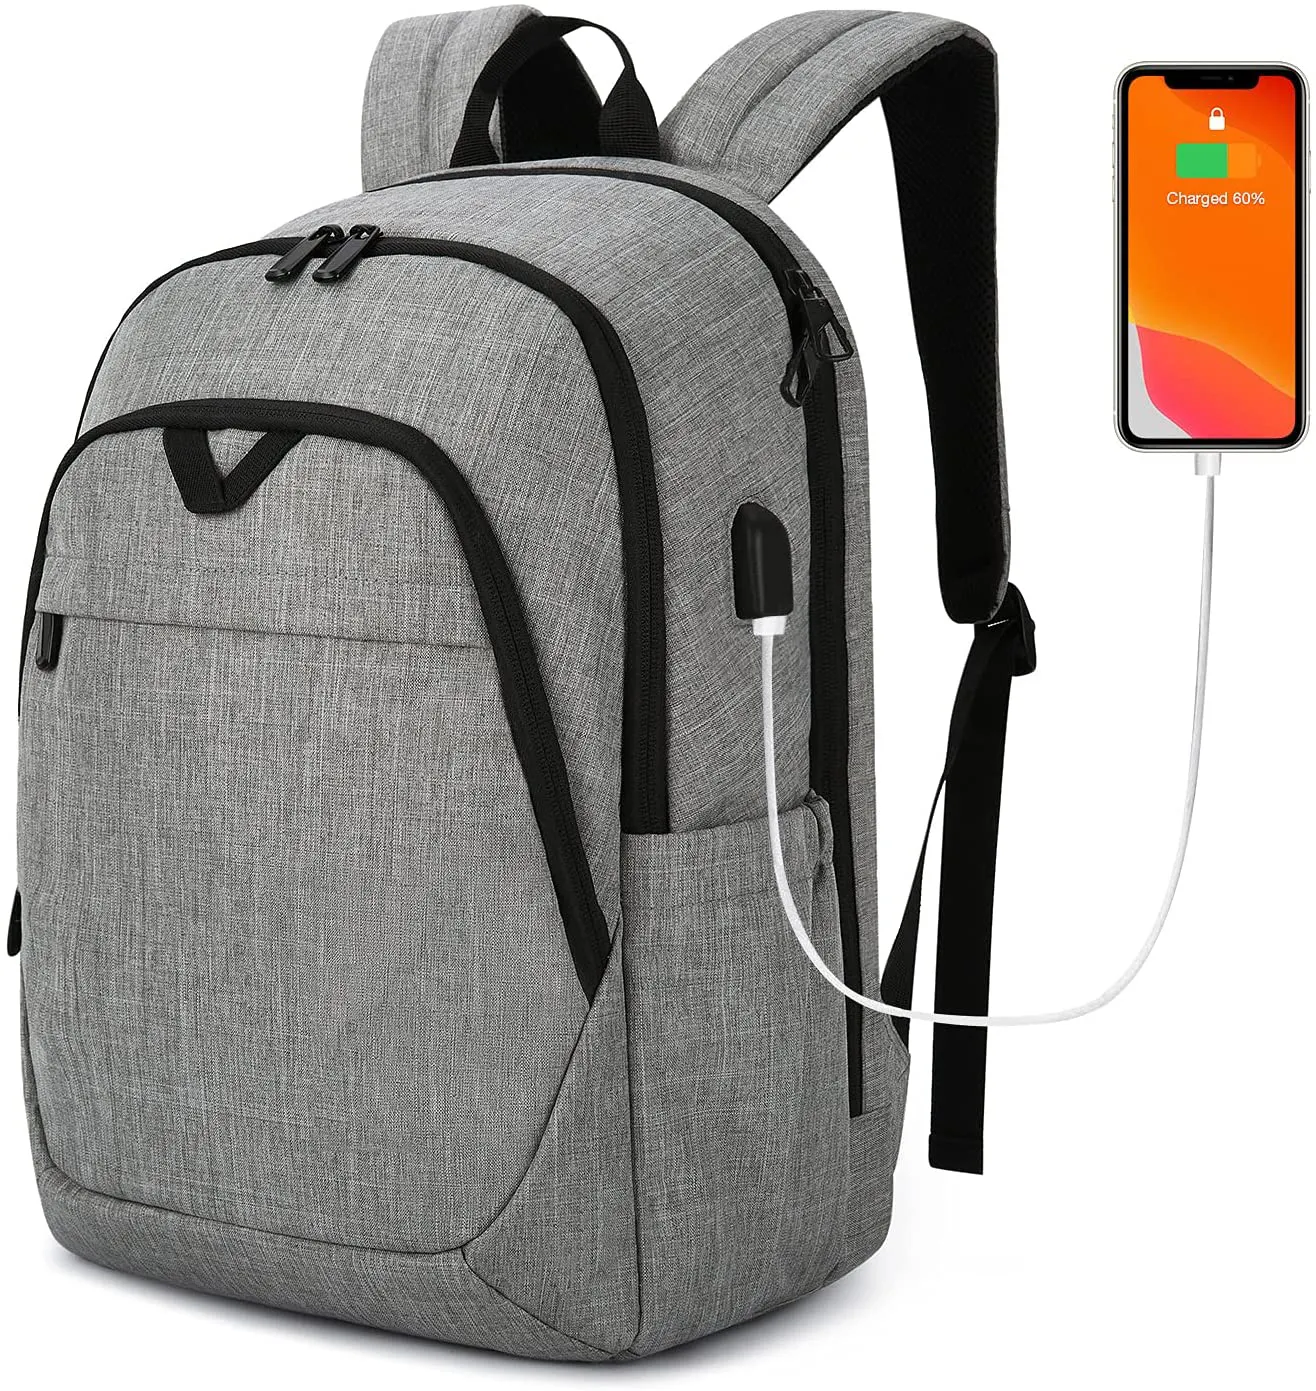 Rucksäcke für Männer College-Rucksack 15.6 Laptop Travel Rucksack mit USB-Ladeans chluss Computer tasche